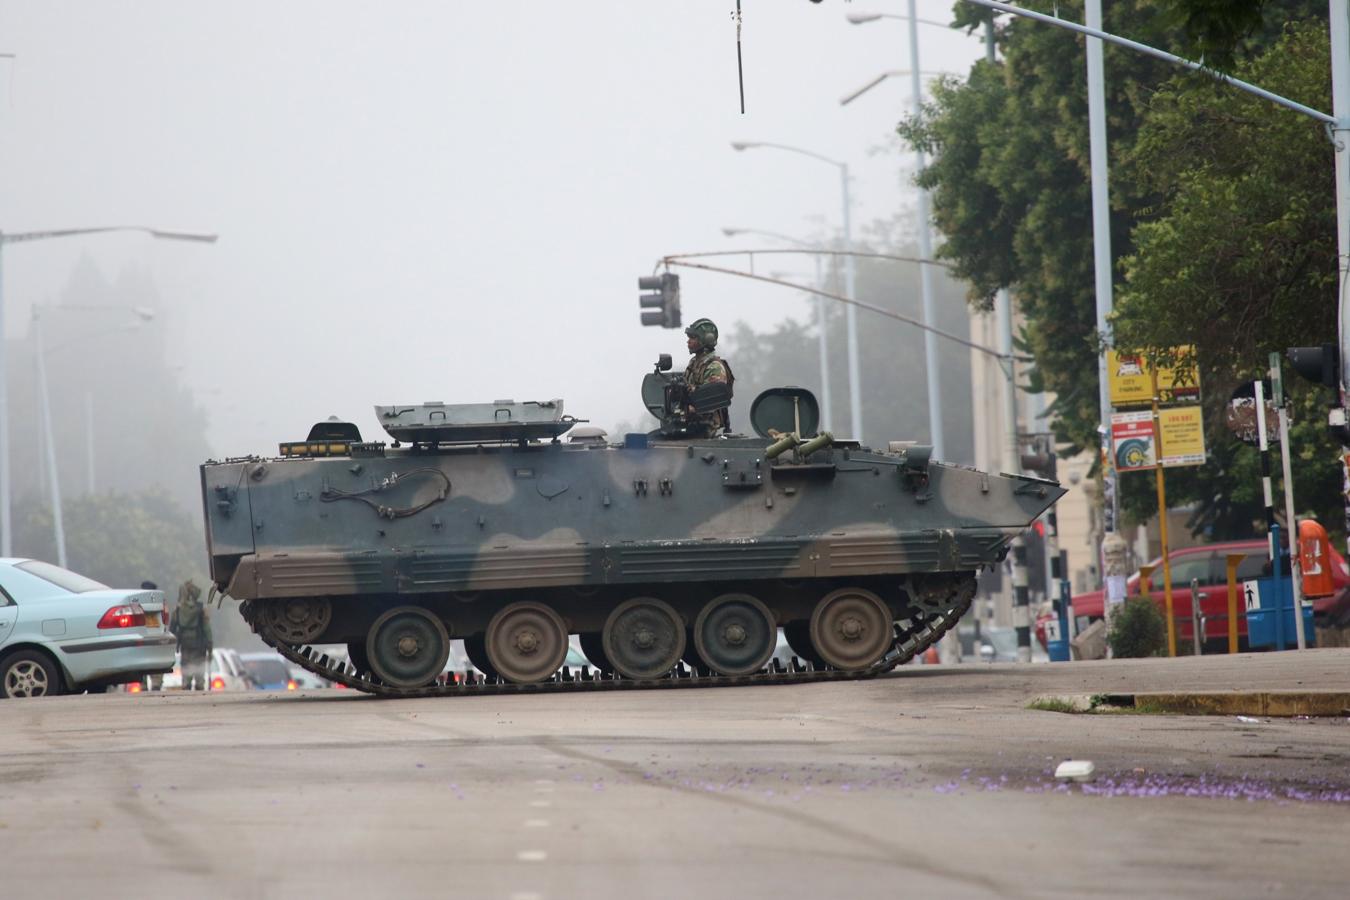 Los tanque se vieron ayer por la tarde solo un día después de que el jefe de las fuerzas armadas del país, Constantine Chiwenga, advirtiera de que se tomarían «medidas correctivas» si continúa la purga de veteranos en el partido de Mugabe. 